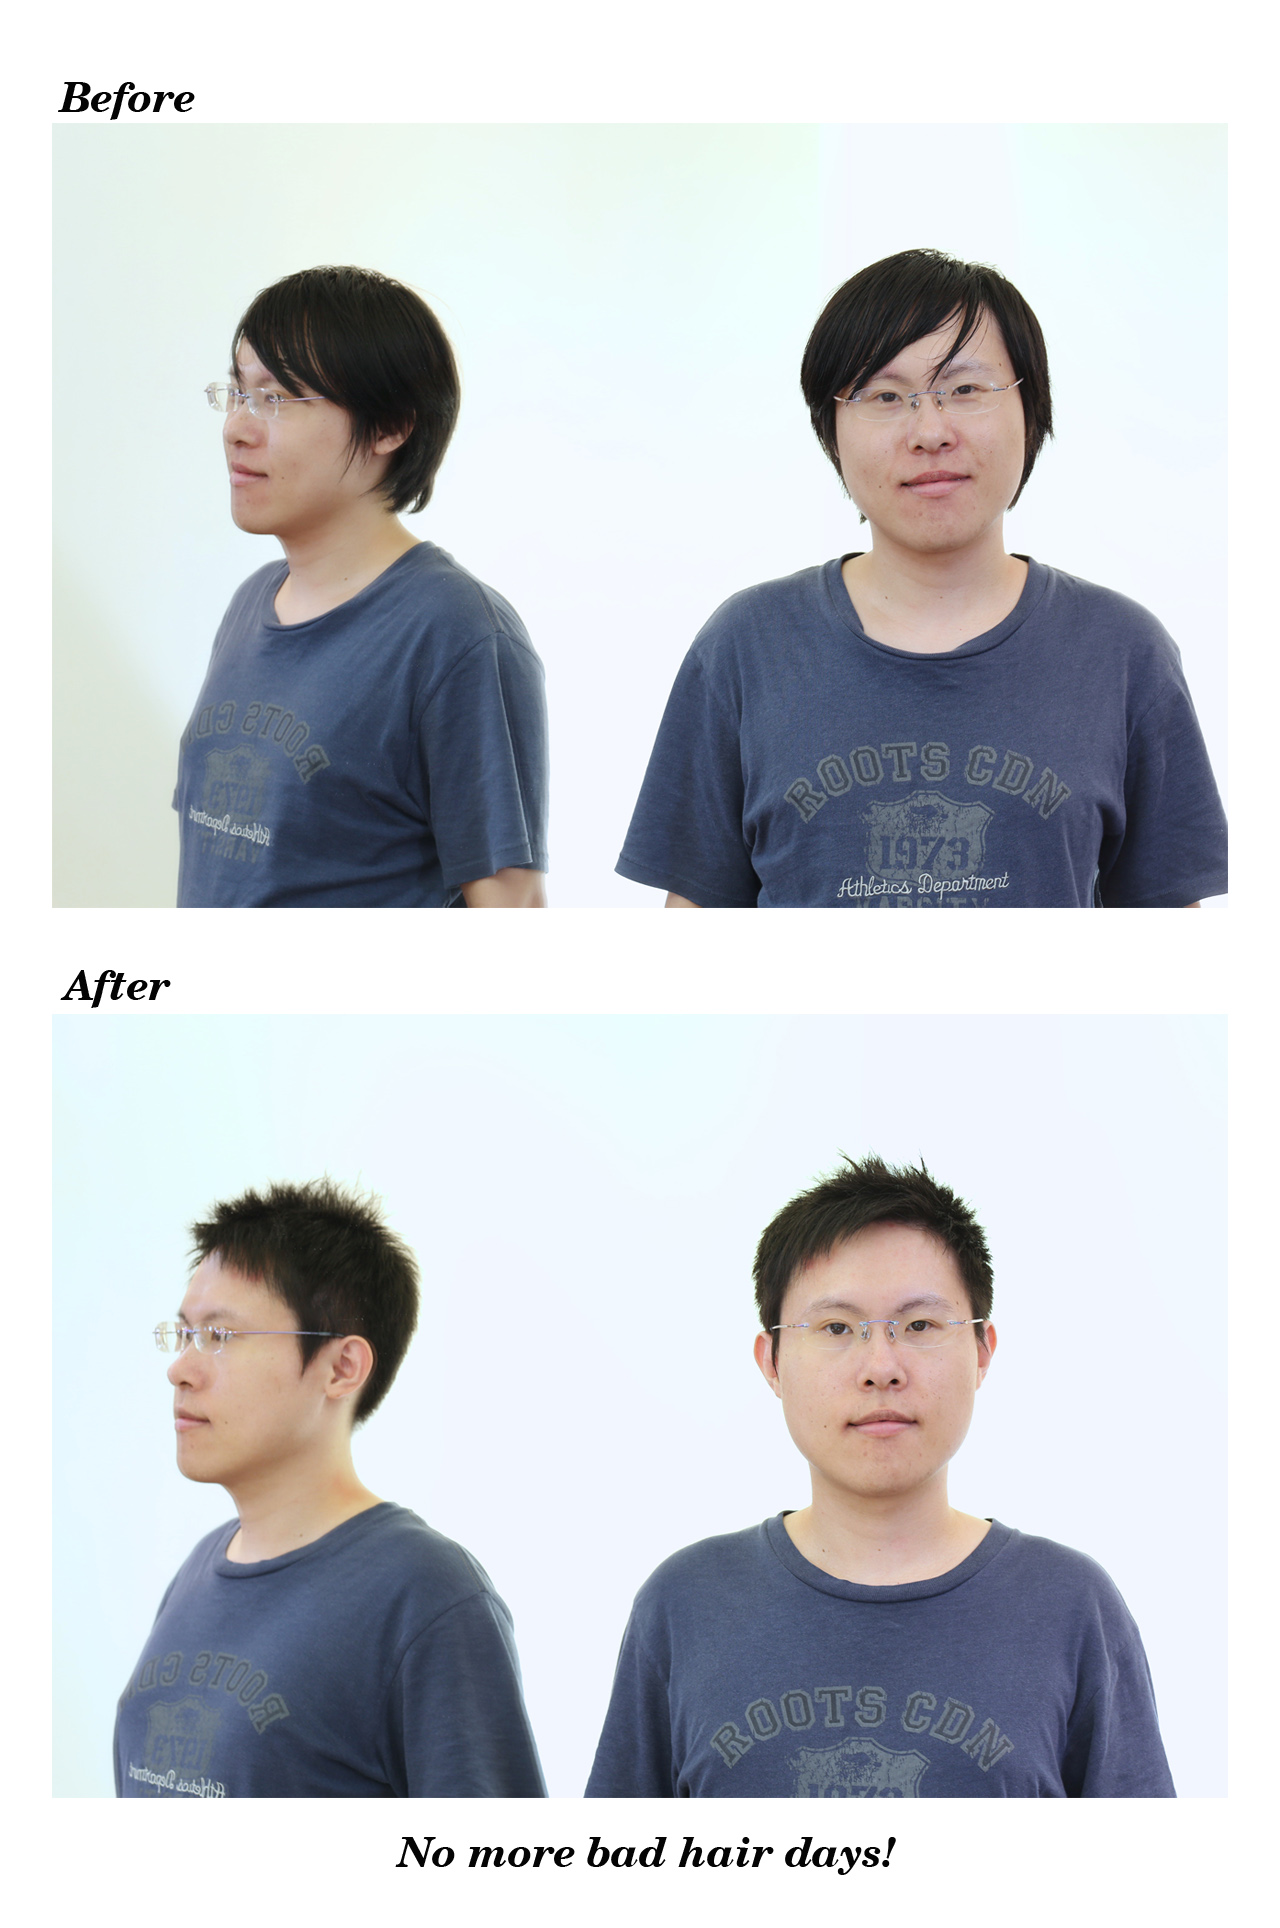 20190106王先生剪髮前後照正面組圖1